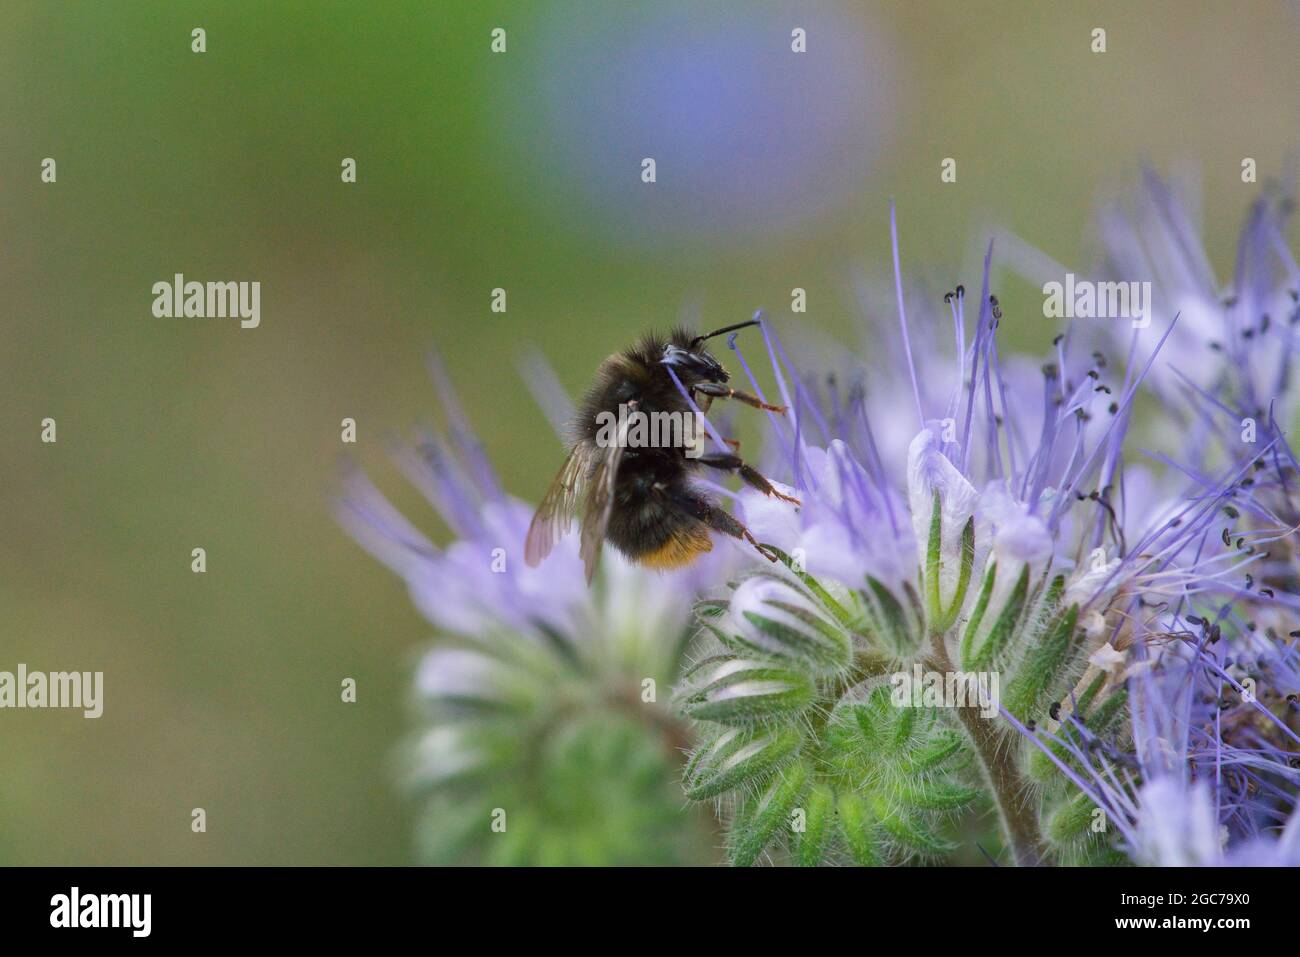 Eine niedliche Hummel auf einer Fliederblume sammelt Nektar. Makroaufnahmen von Insekten, selektiver Fokus, unscharfer Hintergrund, horizontale Ausrichtung. Stockfoto